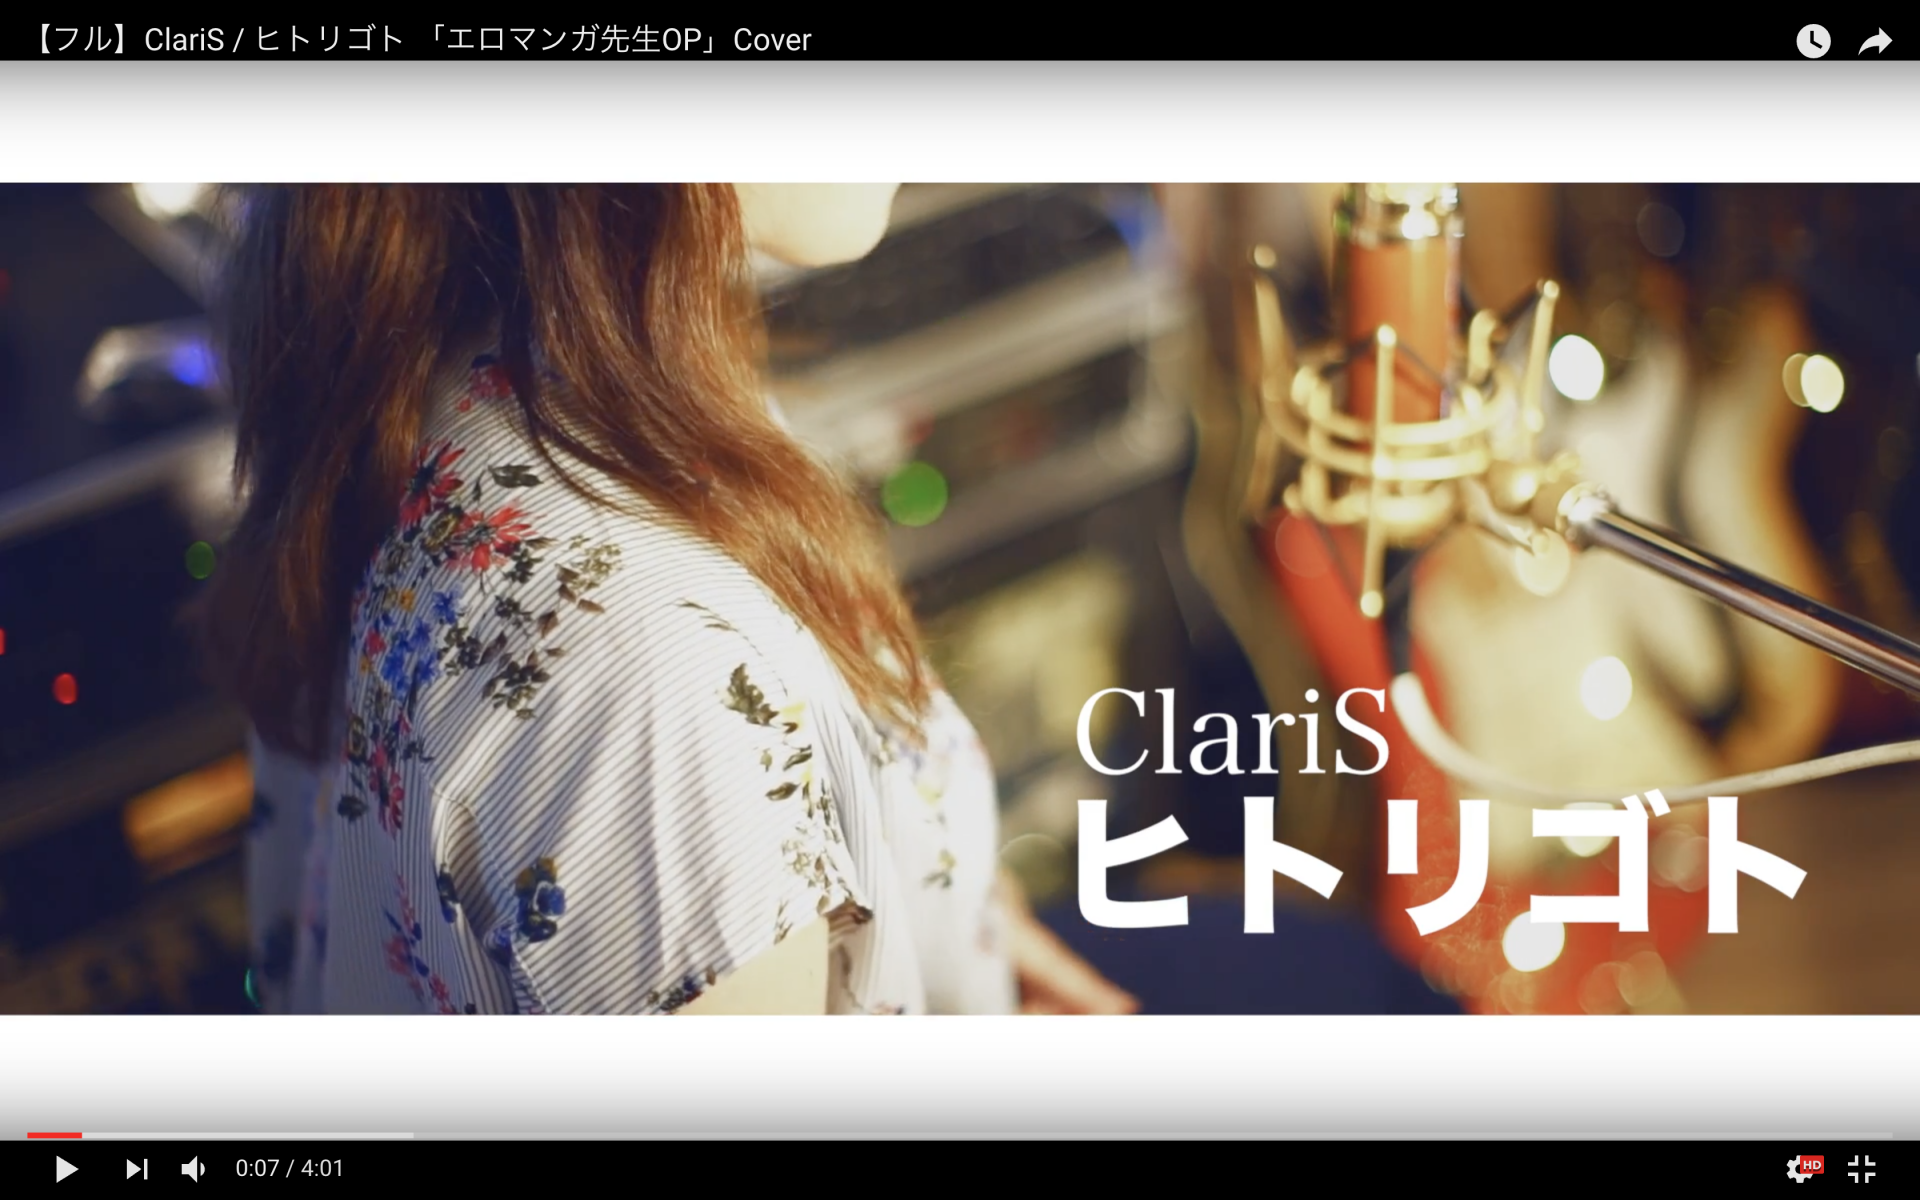 フル Claris ヒトリゴト エロマンガ先生op Cover Toru Studio トルスタジオ 東京台東区のレコーディングスタジオ